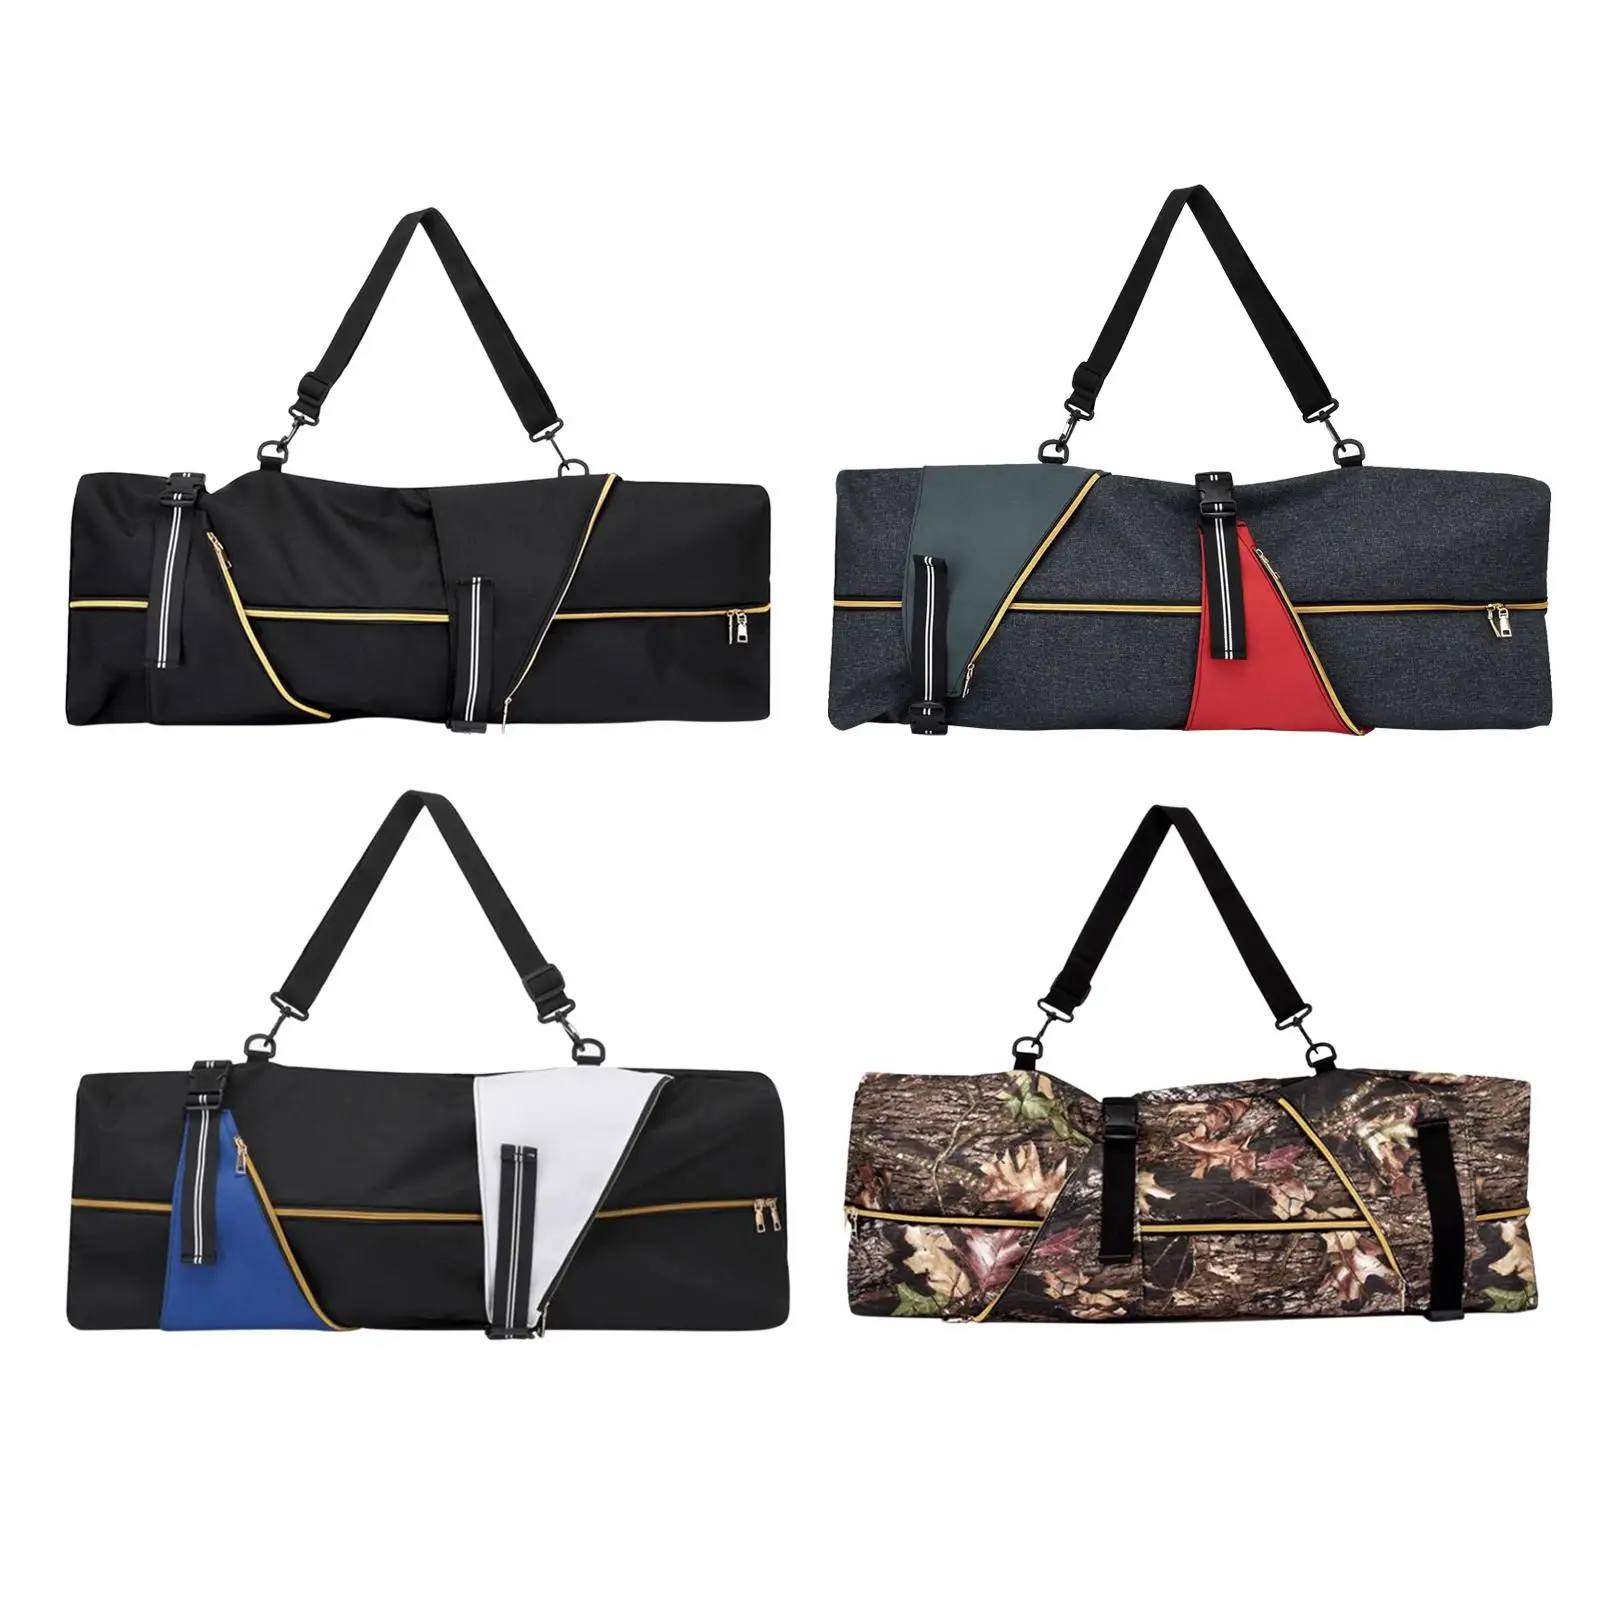 Skateboard Backpack Adjustable Straps Travel Accessories Deck Water Resistant Skateboard Carry Bag Longboard Carrier Bag for Men